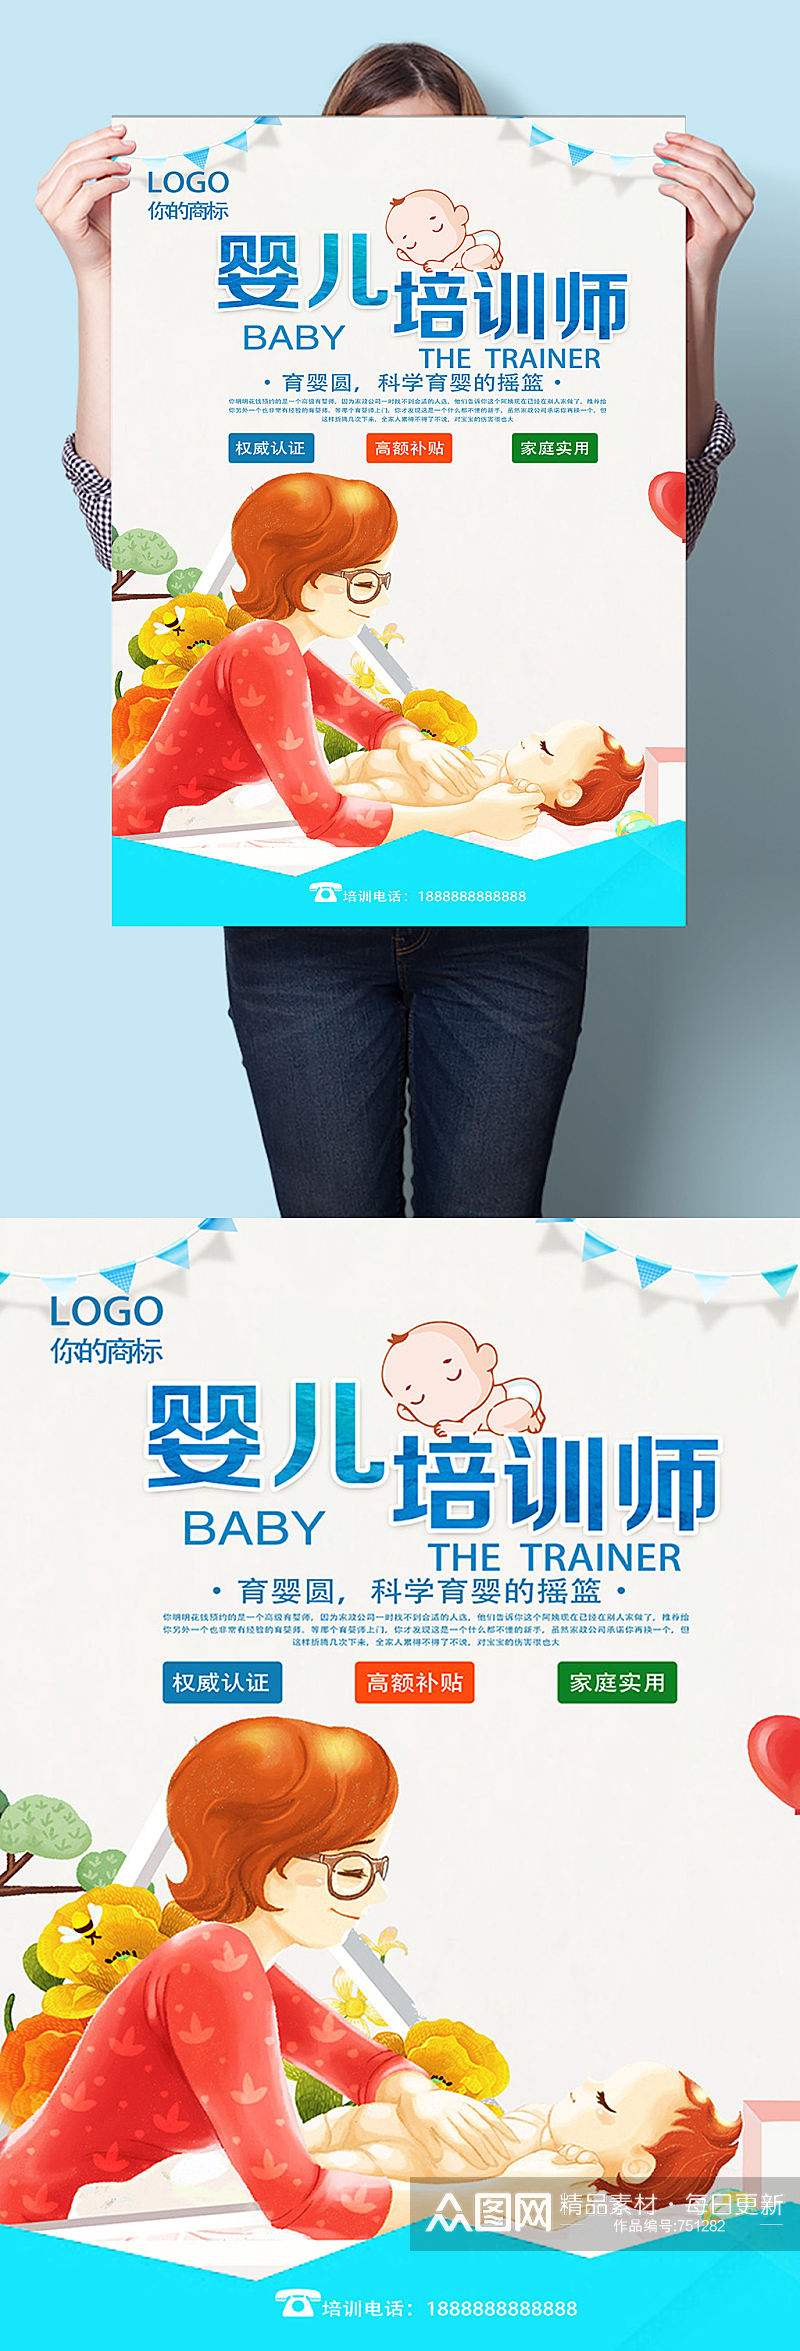 婴儿培训师海报设计素材